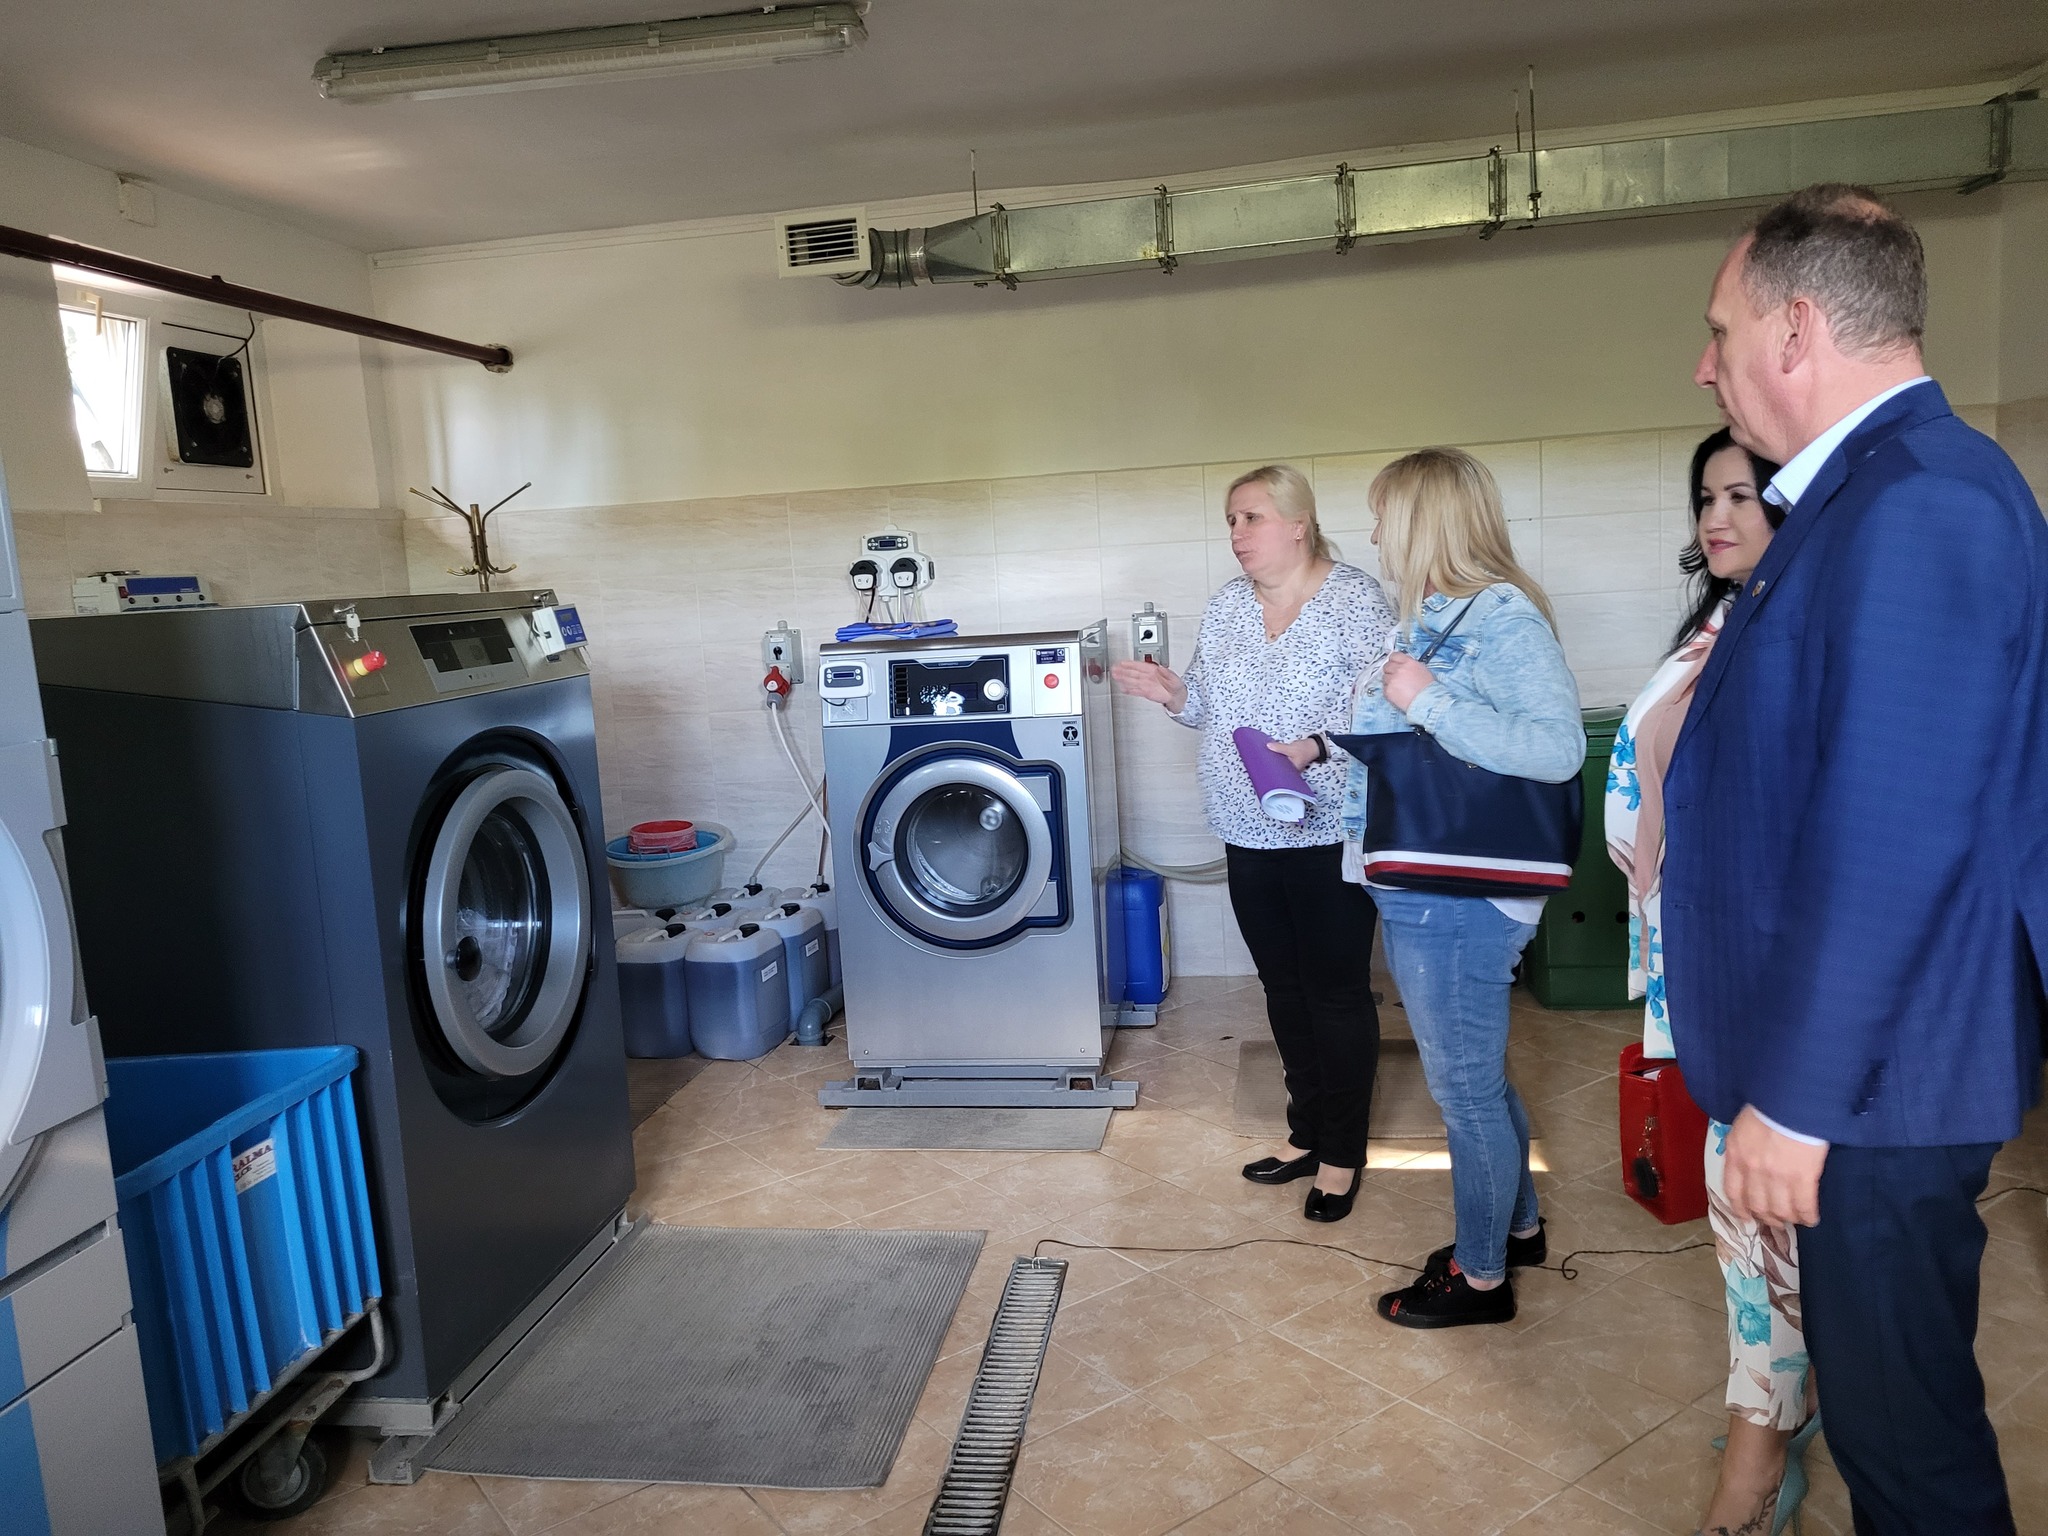 Radni oglądają wnętrze DPS - pralnia z nowymi urządzeniami
